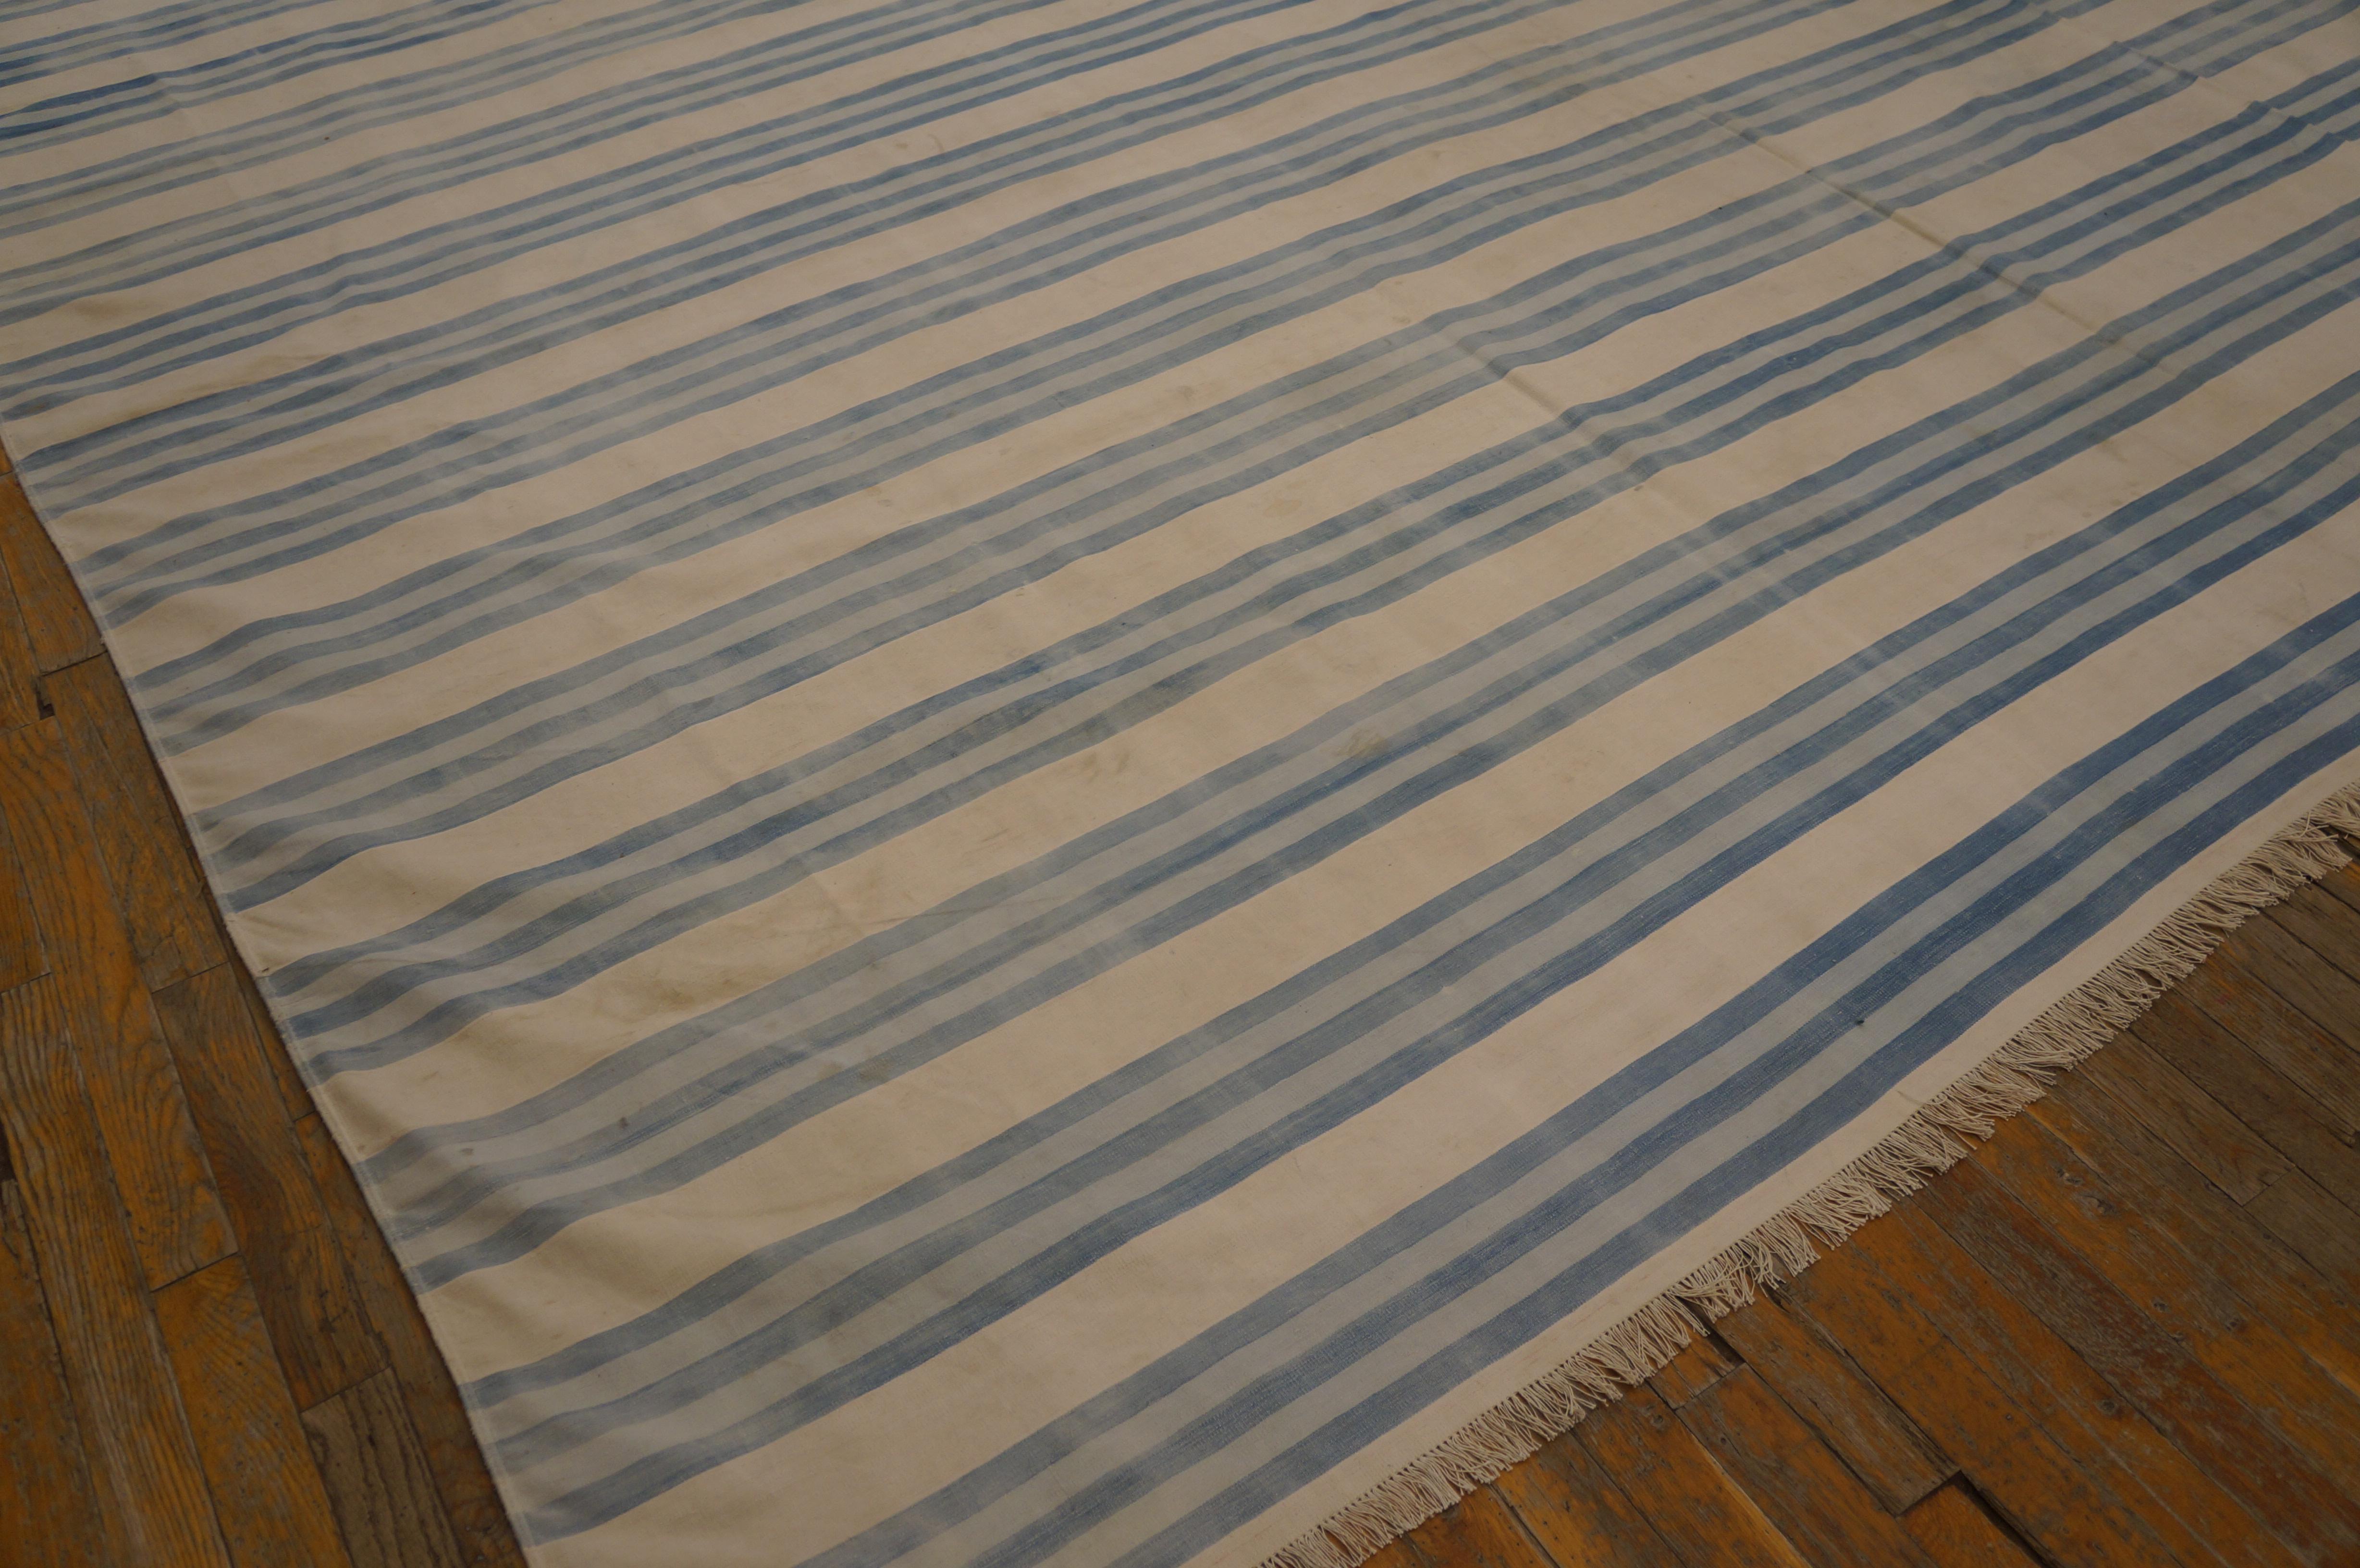 Indischer Dhurrie-Teppich aus Baumwolle des frühen 20. Jahrhunderts ( 11'10